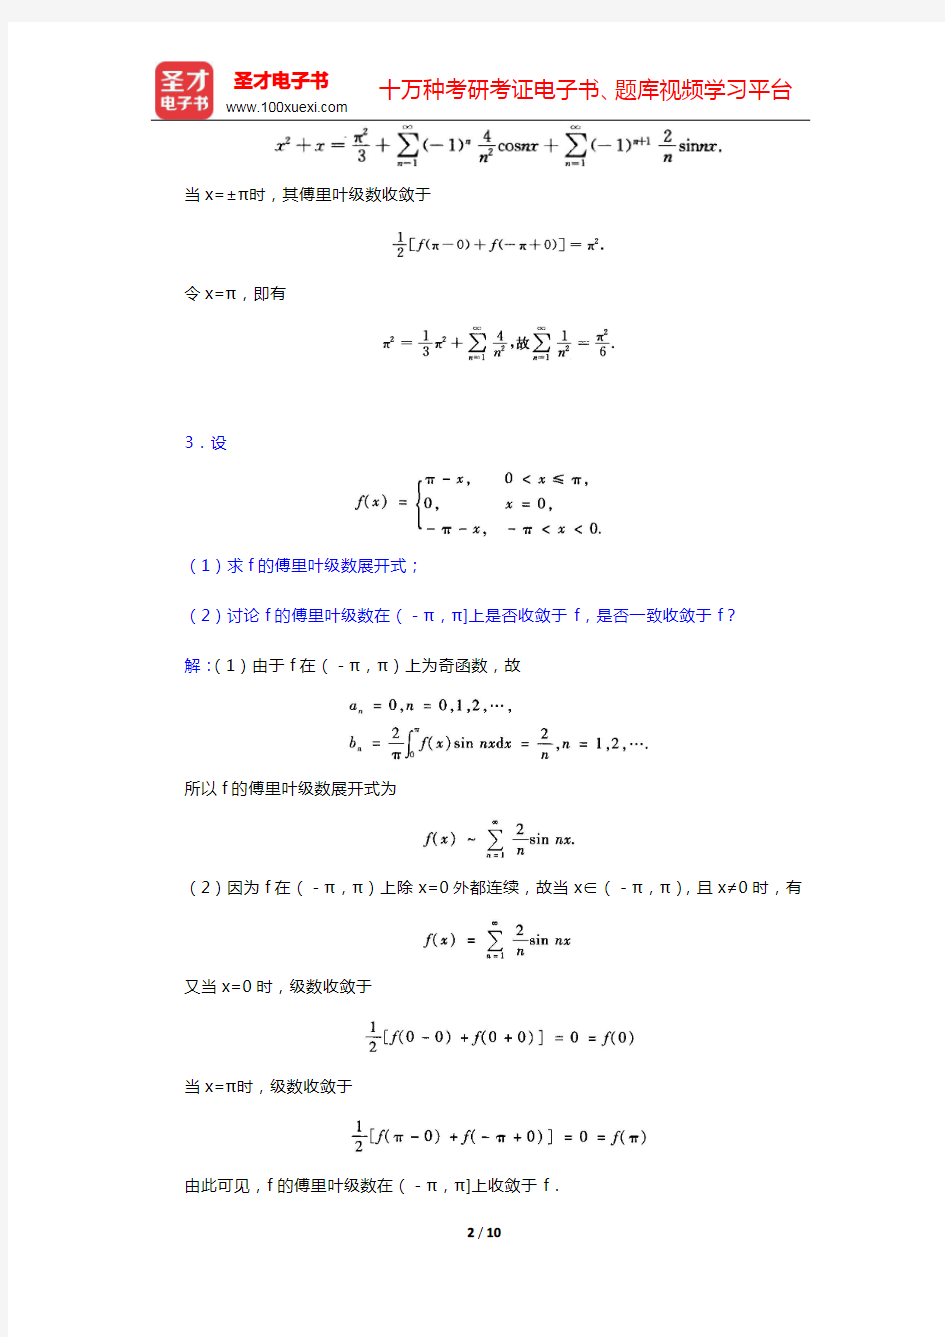 华东师范大学数学系《数学分析》(第4版)(下册)章节题库-傅里叶级数(圣才出品)